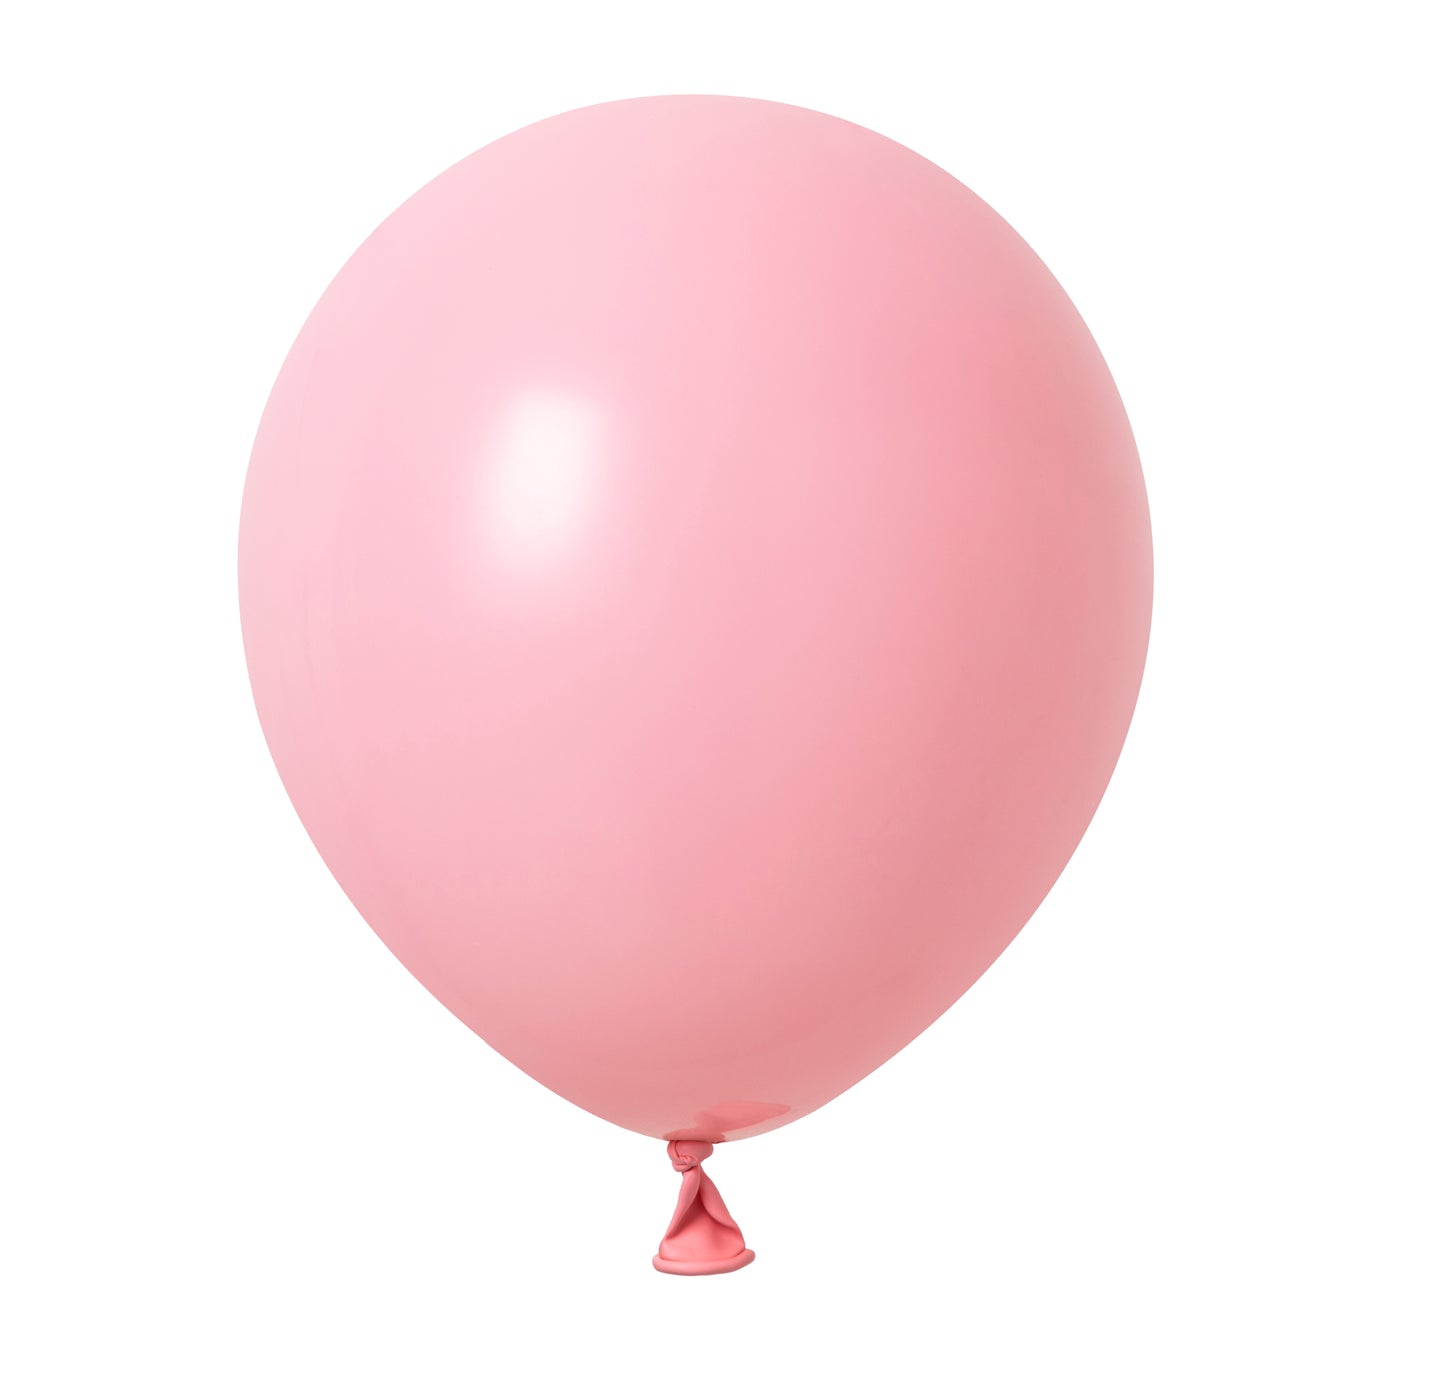 Winntex Premium 18" Baby Pink Latex Balloon 25ct